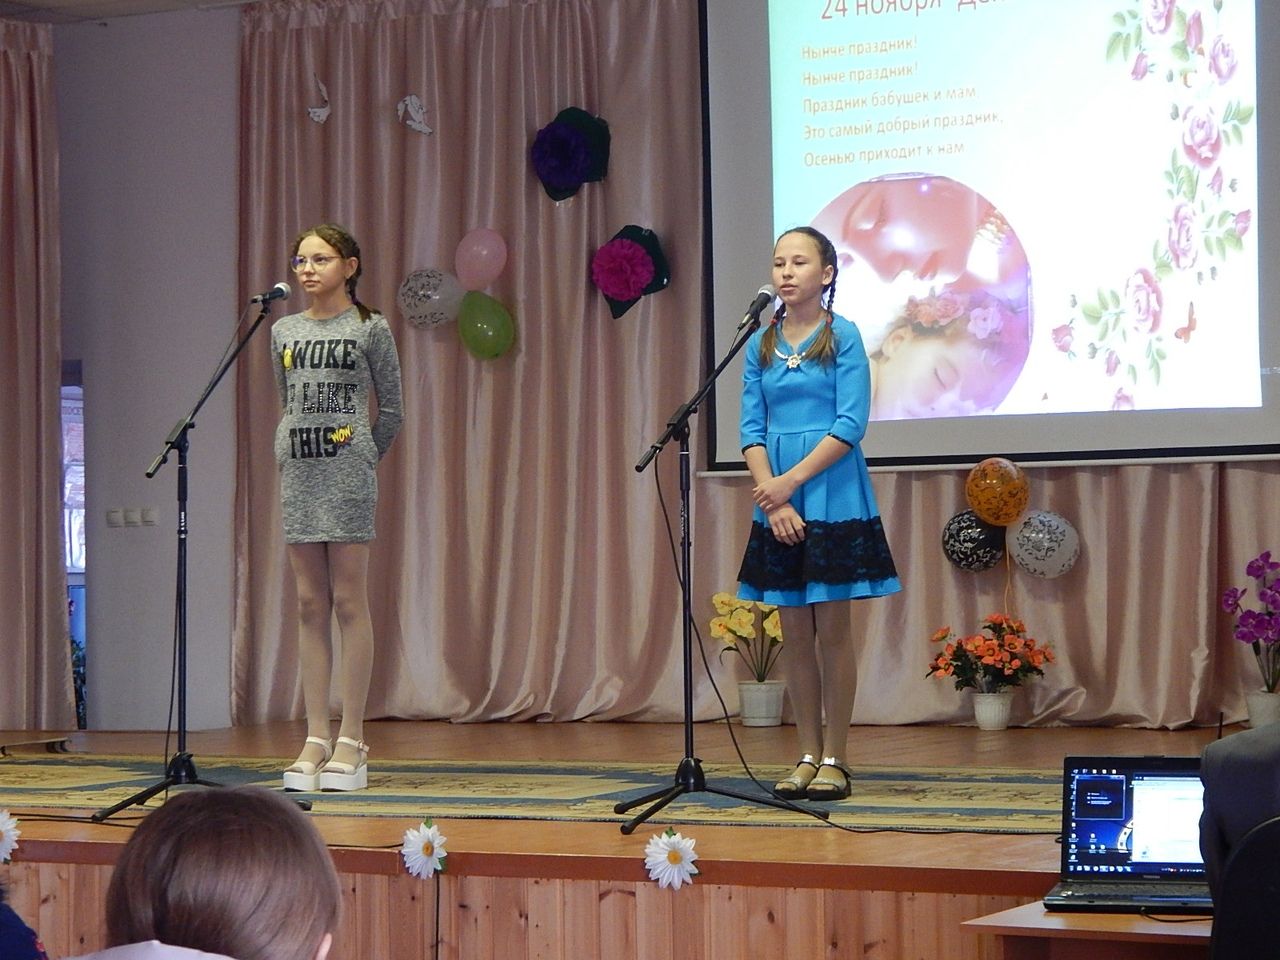 Фоторепортаж: 24 ноября в Ялкынском СДК прошел праздничный концерт под названием "СВЕТЛОЕ ИМЯ - МАМА!"